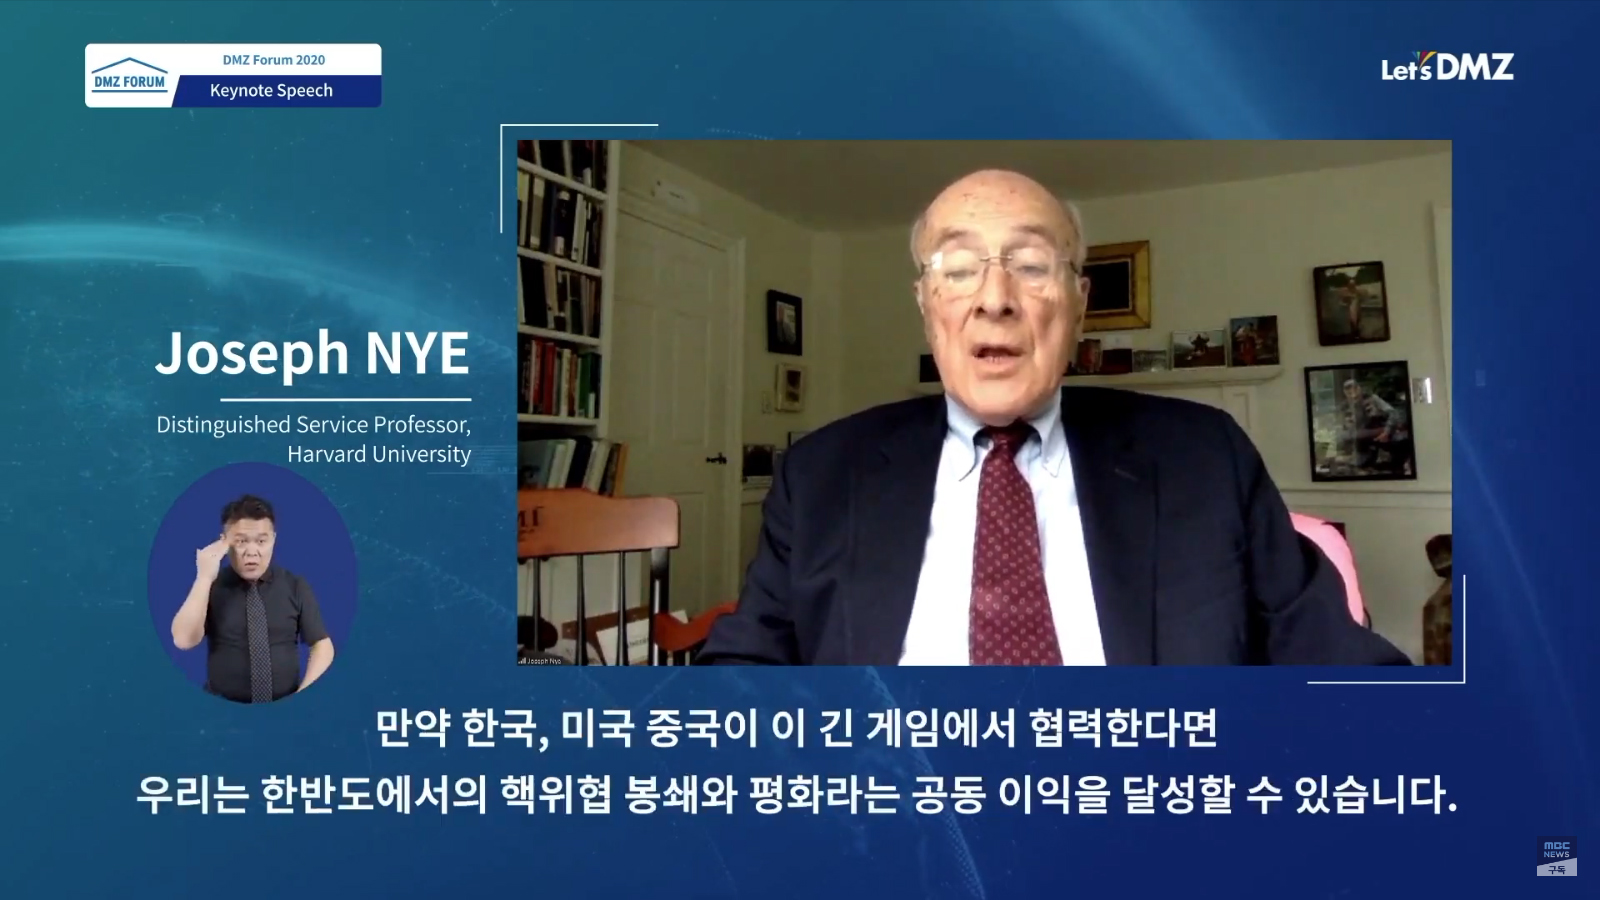 국제관계학 석학인 미국 하버드대학교 죠셉 나이 교수는 “한국, 미국, 중국이 협력한다면 우리는 한반도에서 핵위협 봉쇄와 평화라는 공동이익을 달성할 수 있다”고 말했다.